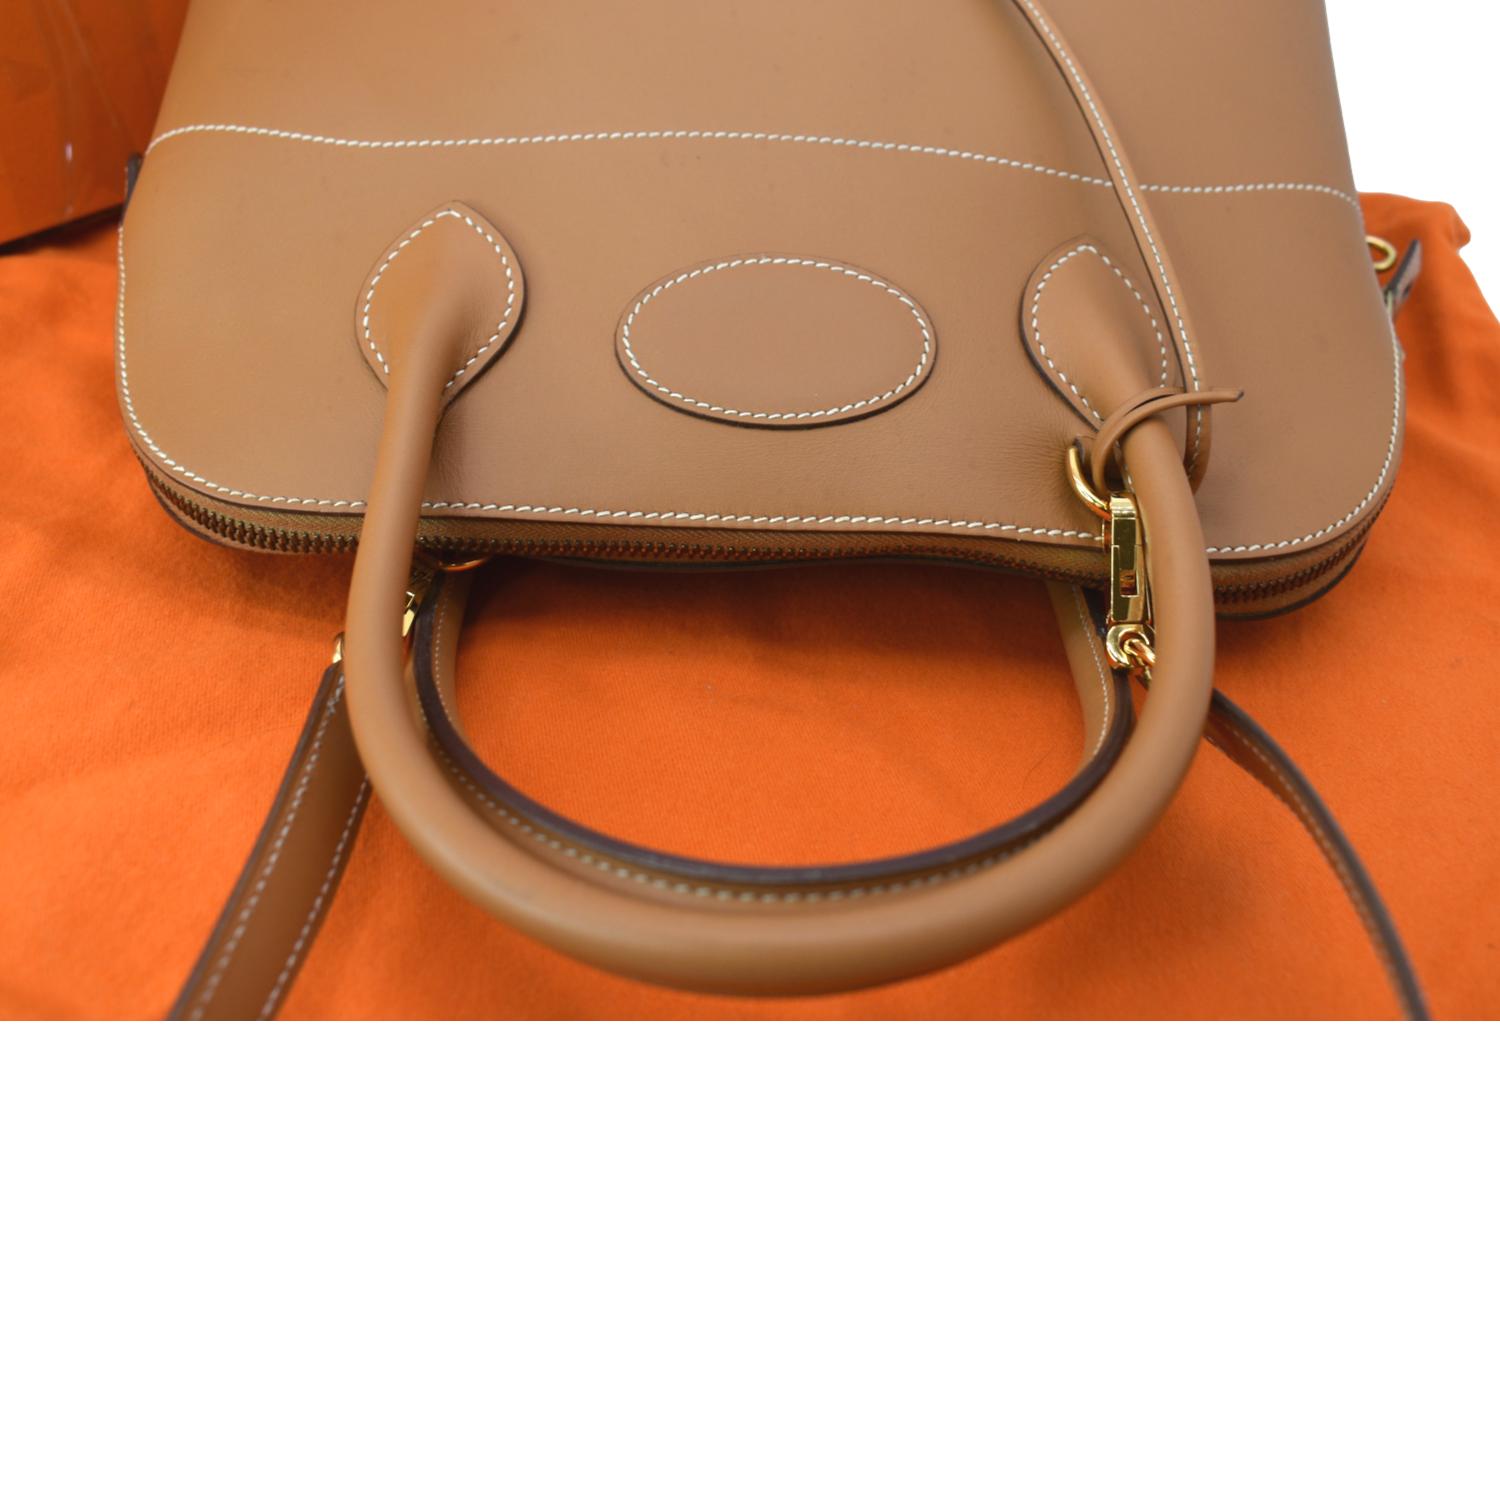 Borsa Hermes Bolide 35 cm in pelle Swift rossa  Taschen aus zweiter Hand -  Hermès - AmaflightschoolShops - Kelly 32 cm